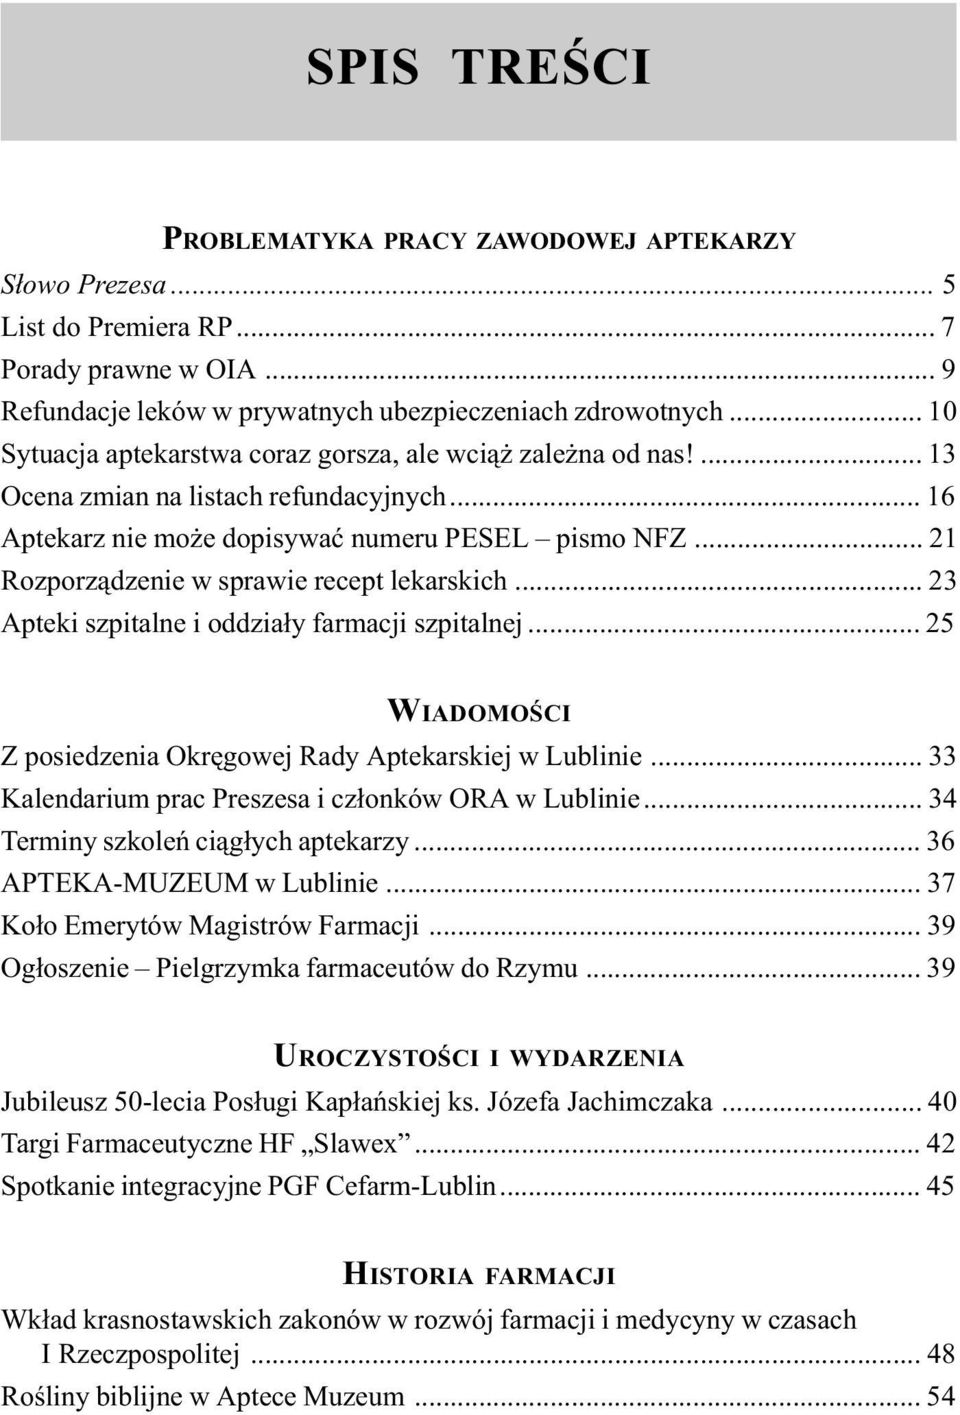 .. 21 Rozporz¹dzenie w sprawie recept lekarskich... 23 Apteki szpitalne i oddzia³y farmacji szpitalnej... 25 WIADOMOŒCI Z posiedzenia Okrêgowej Rady Aptekarskiej w Lublinie.